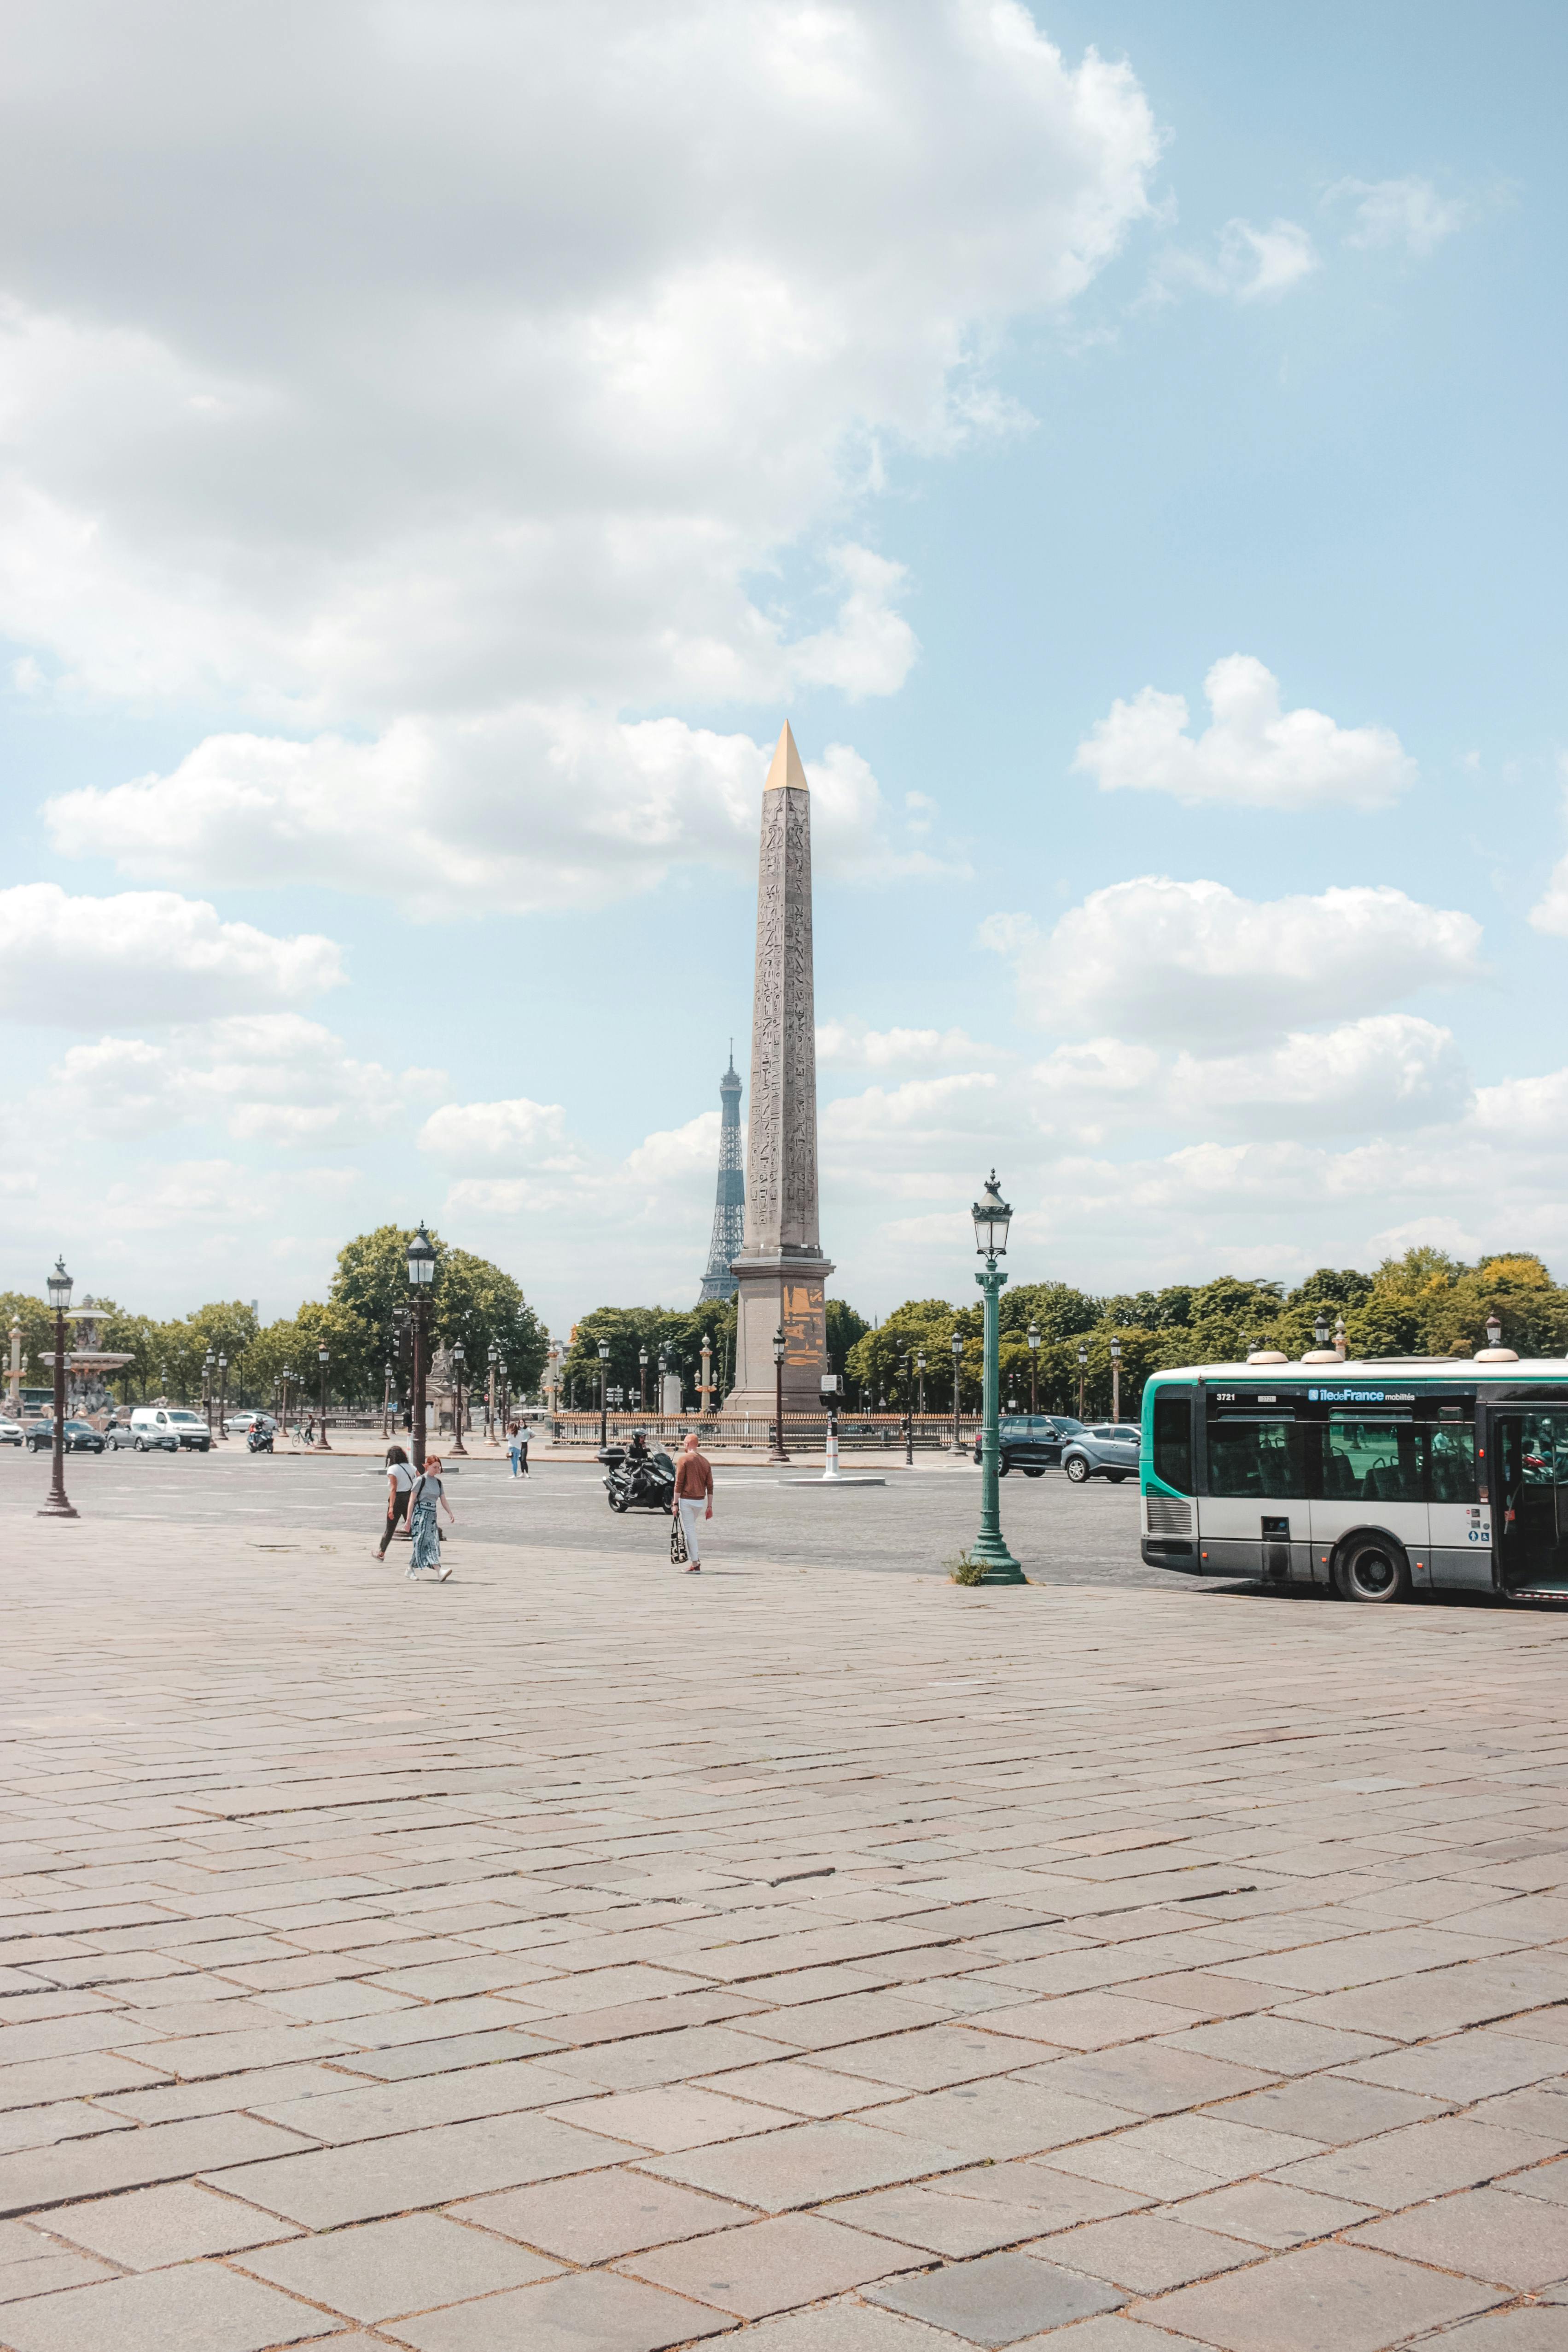 File:The Place Vendôme Column-Paris.jpg - Wikimedia Commons